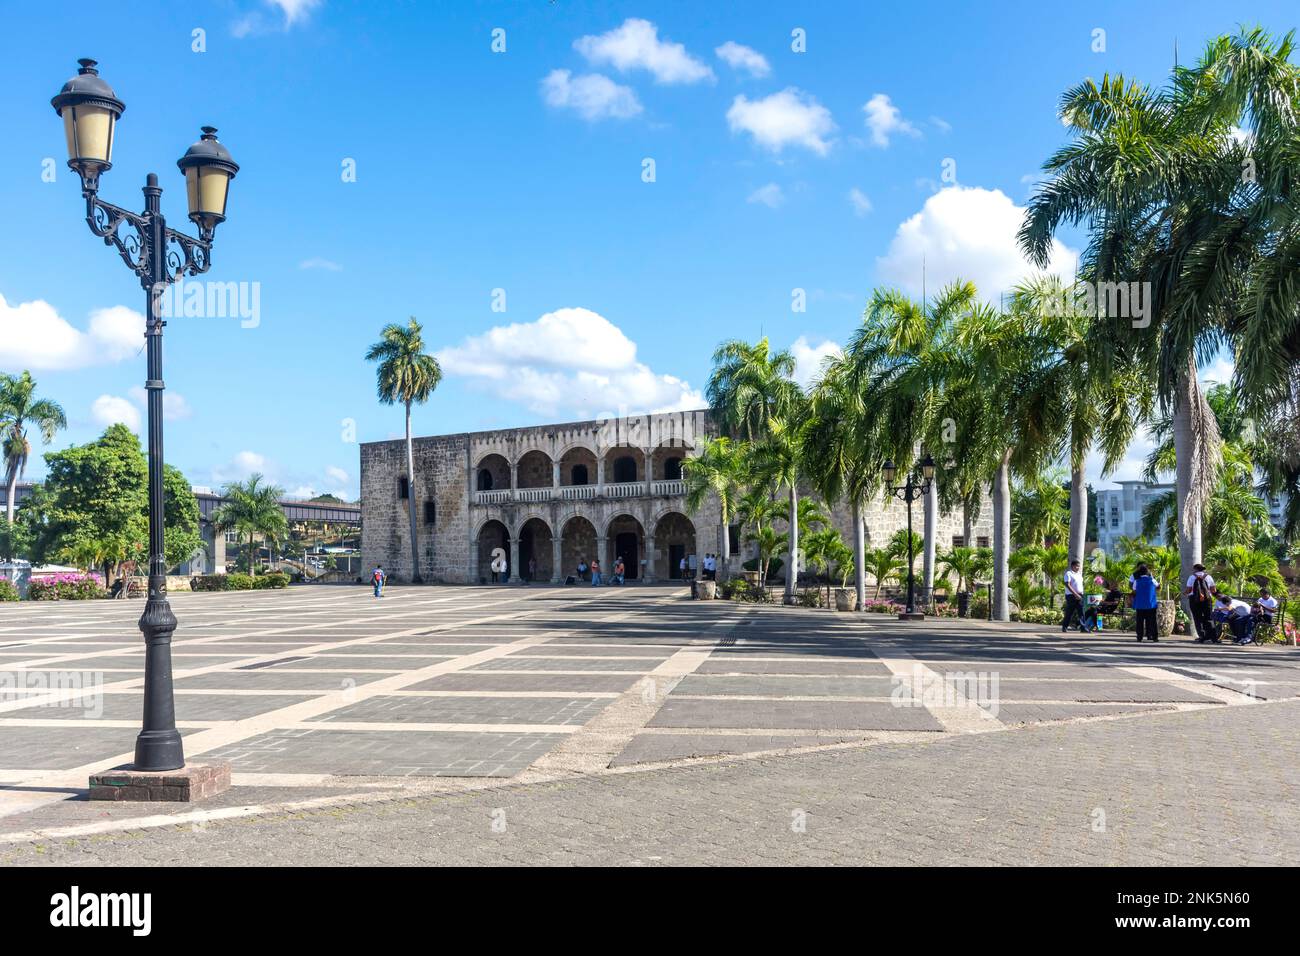 Alcázar de Colón, Plaza de la Espana de La Hispanidad, Santo Domingo, Dominican Republic (Republica Dominicana), Greater Antilles, Caribbean Stock Photo